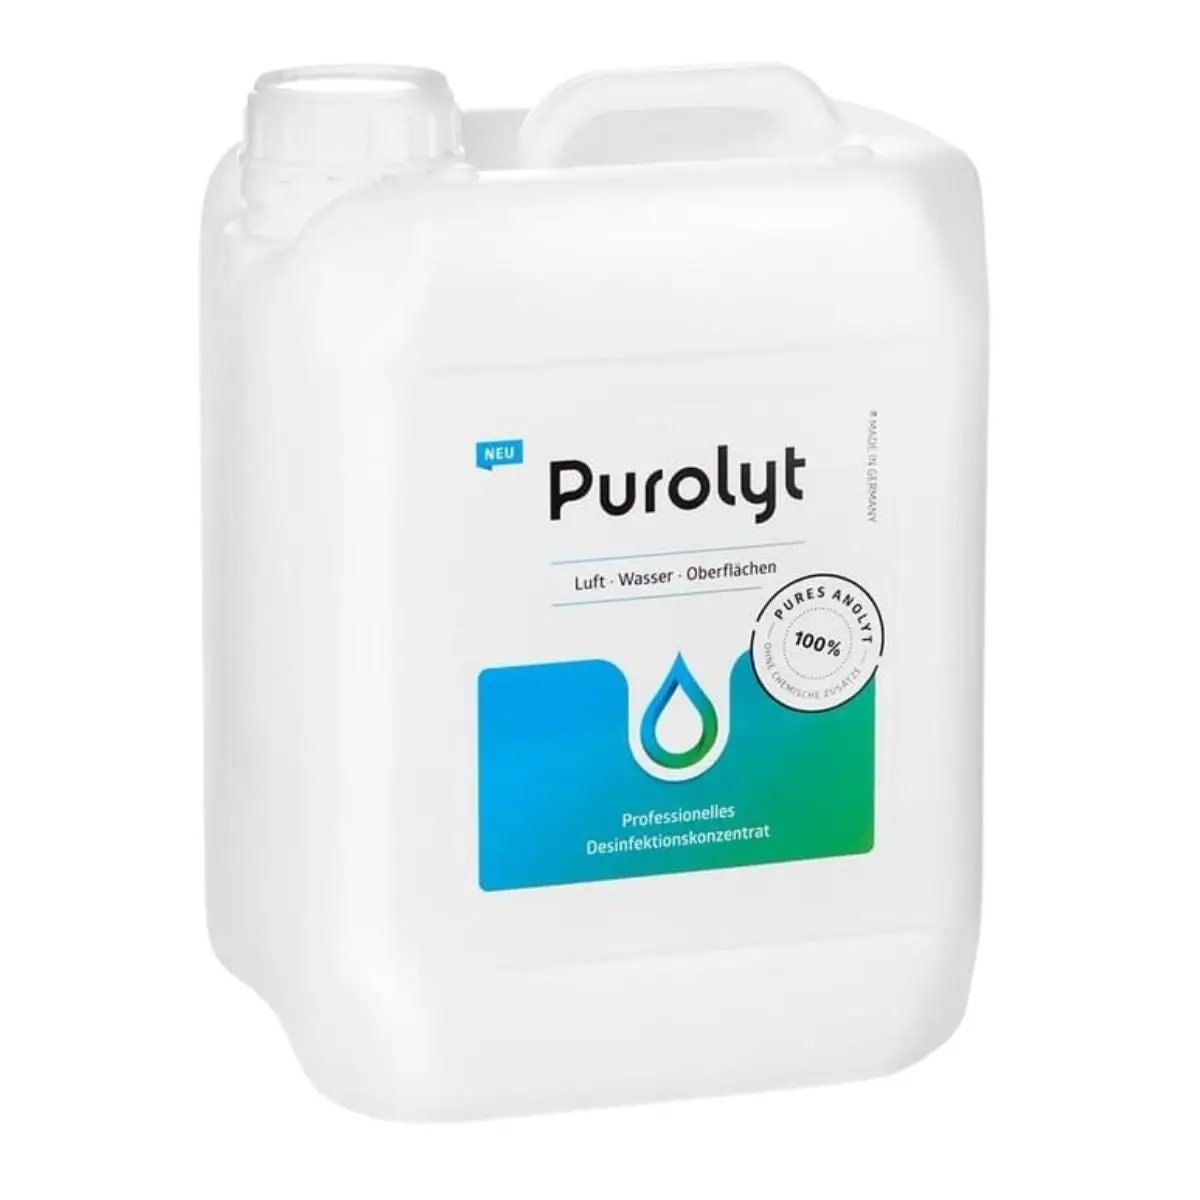 Purolyt désinfectant professionnel de 5 litres